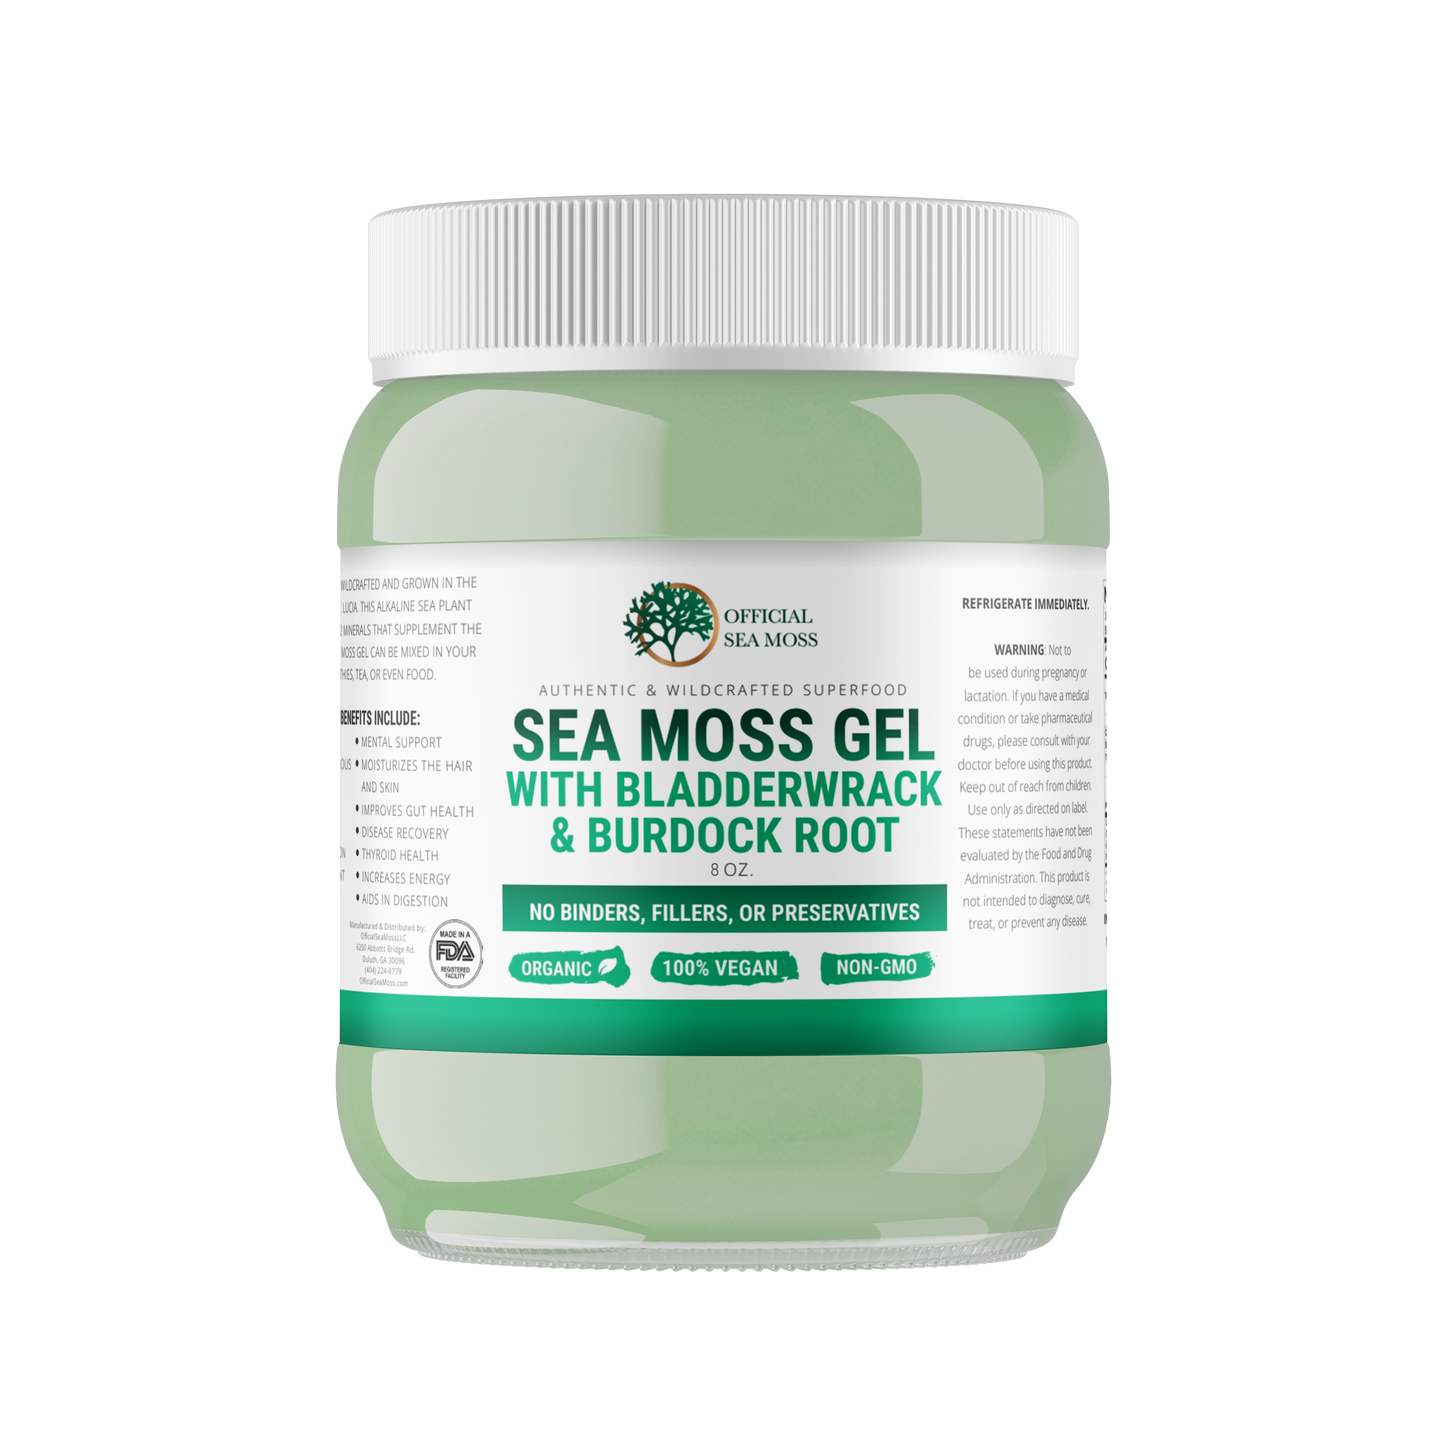 Dr. Sebi's "Inspired" Sea Moss Gel